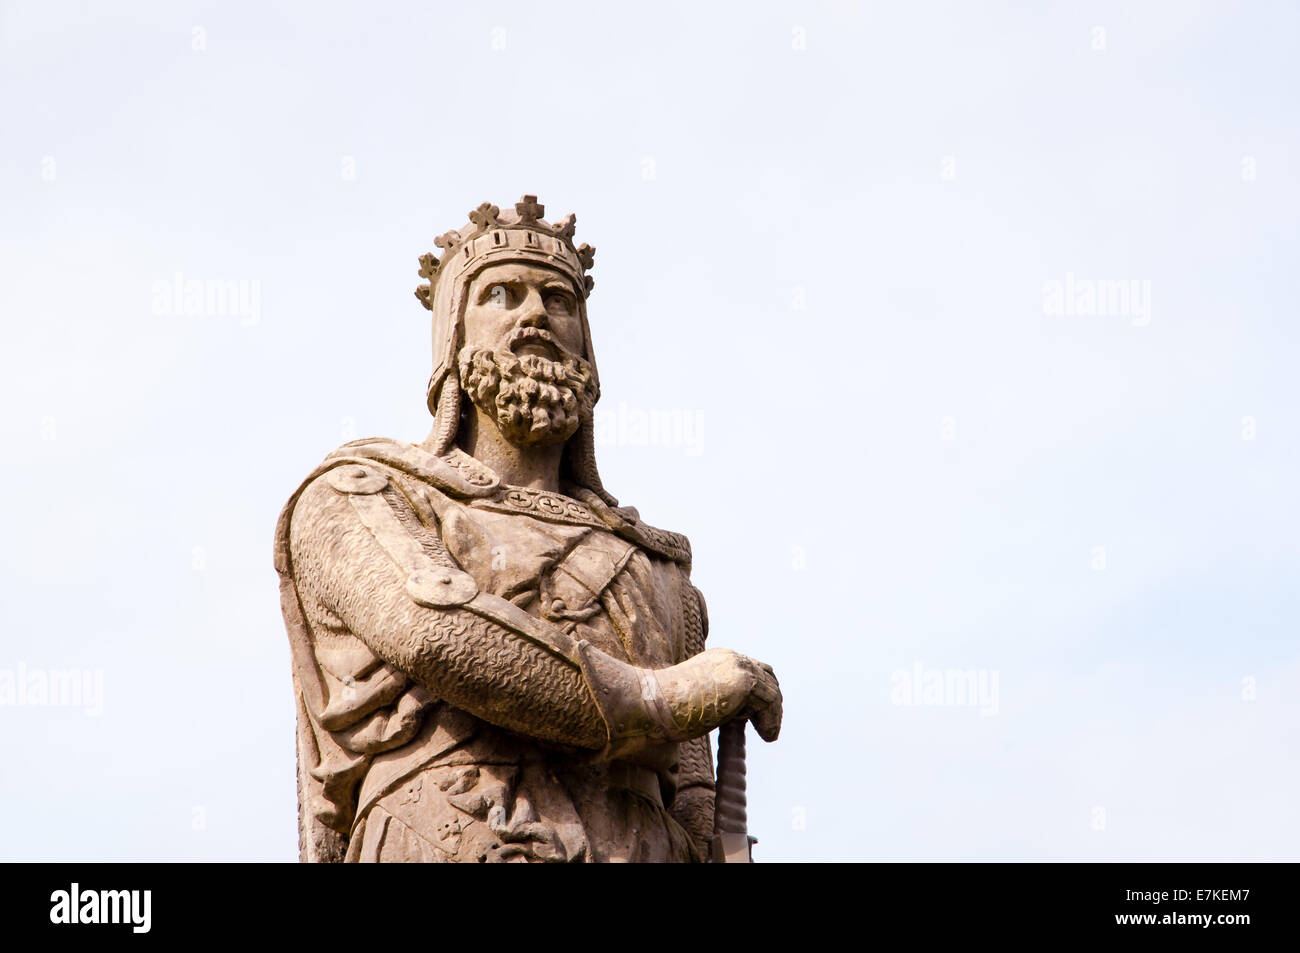 Statue du roi Robert the Bruce au château de Stirling, Écosse Banque D'Images